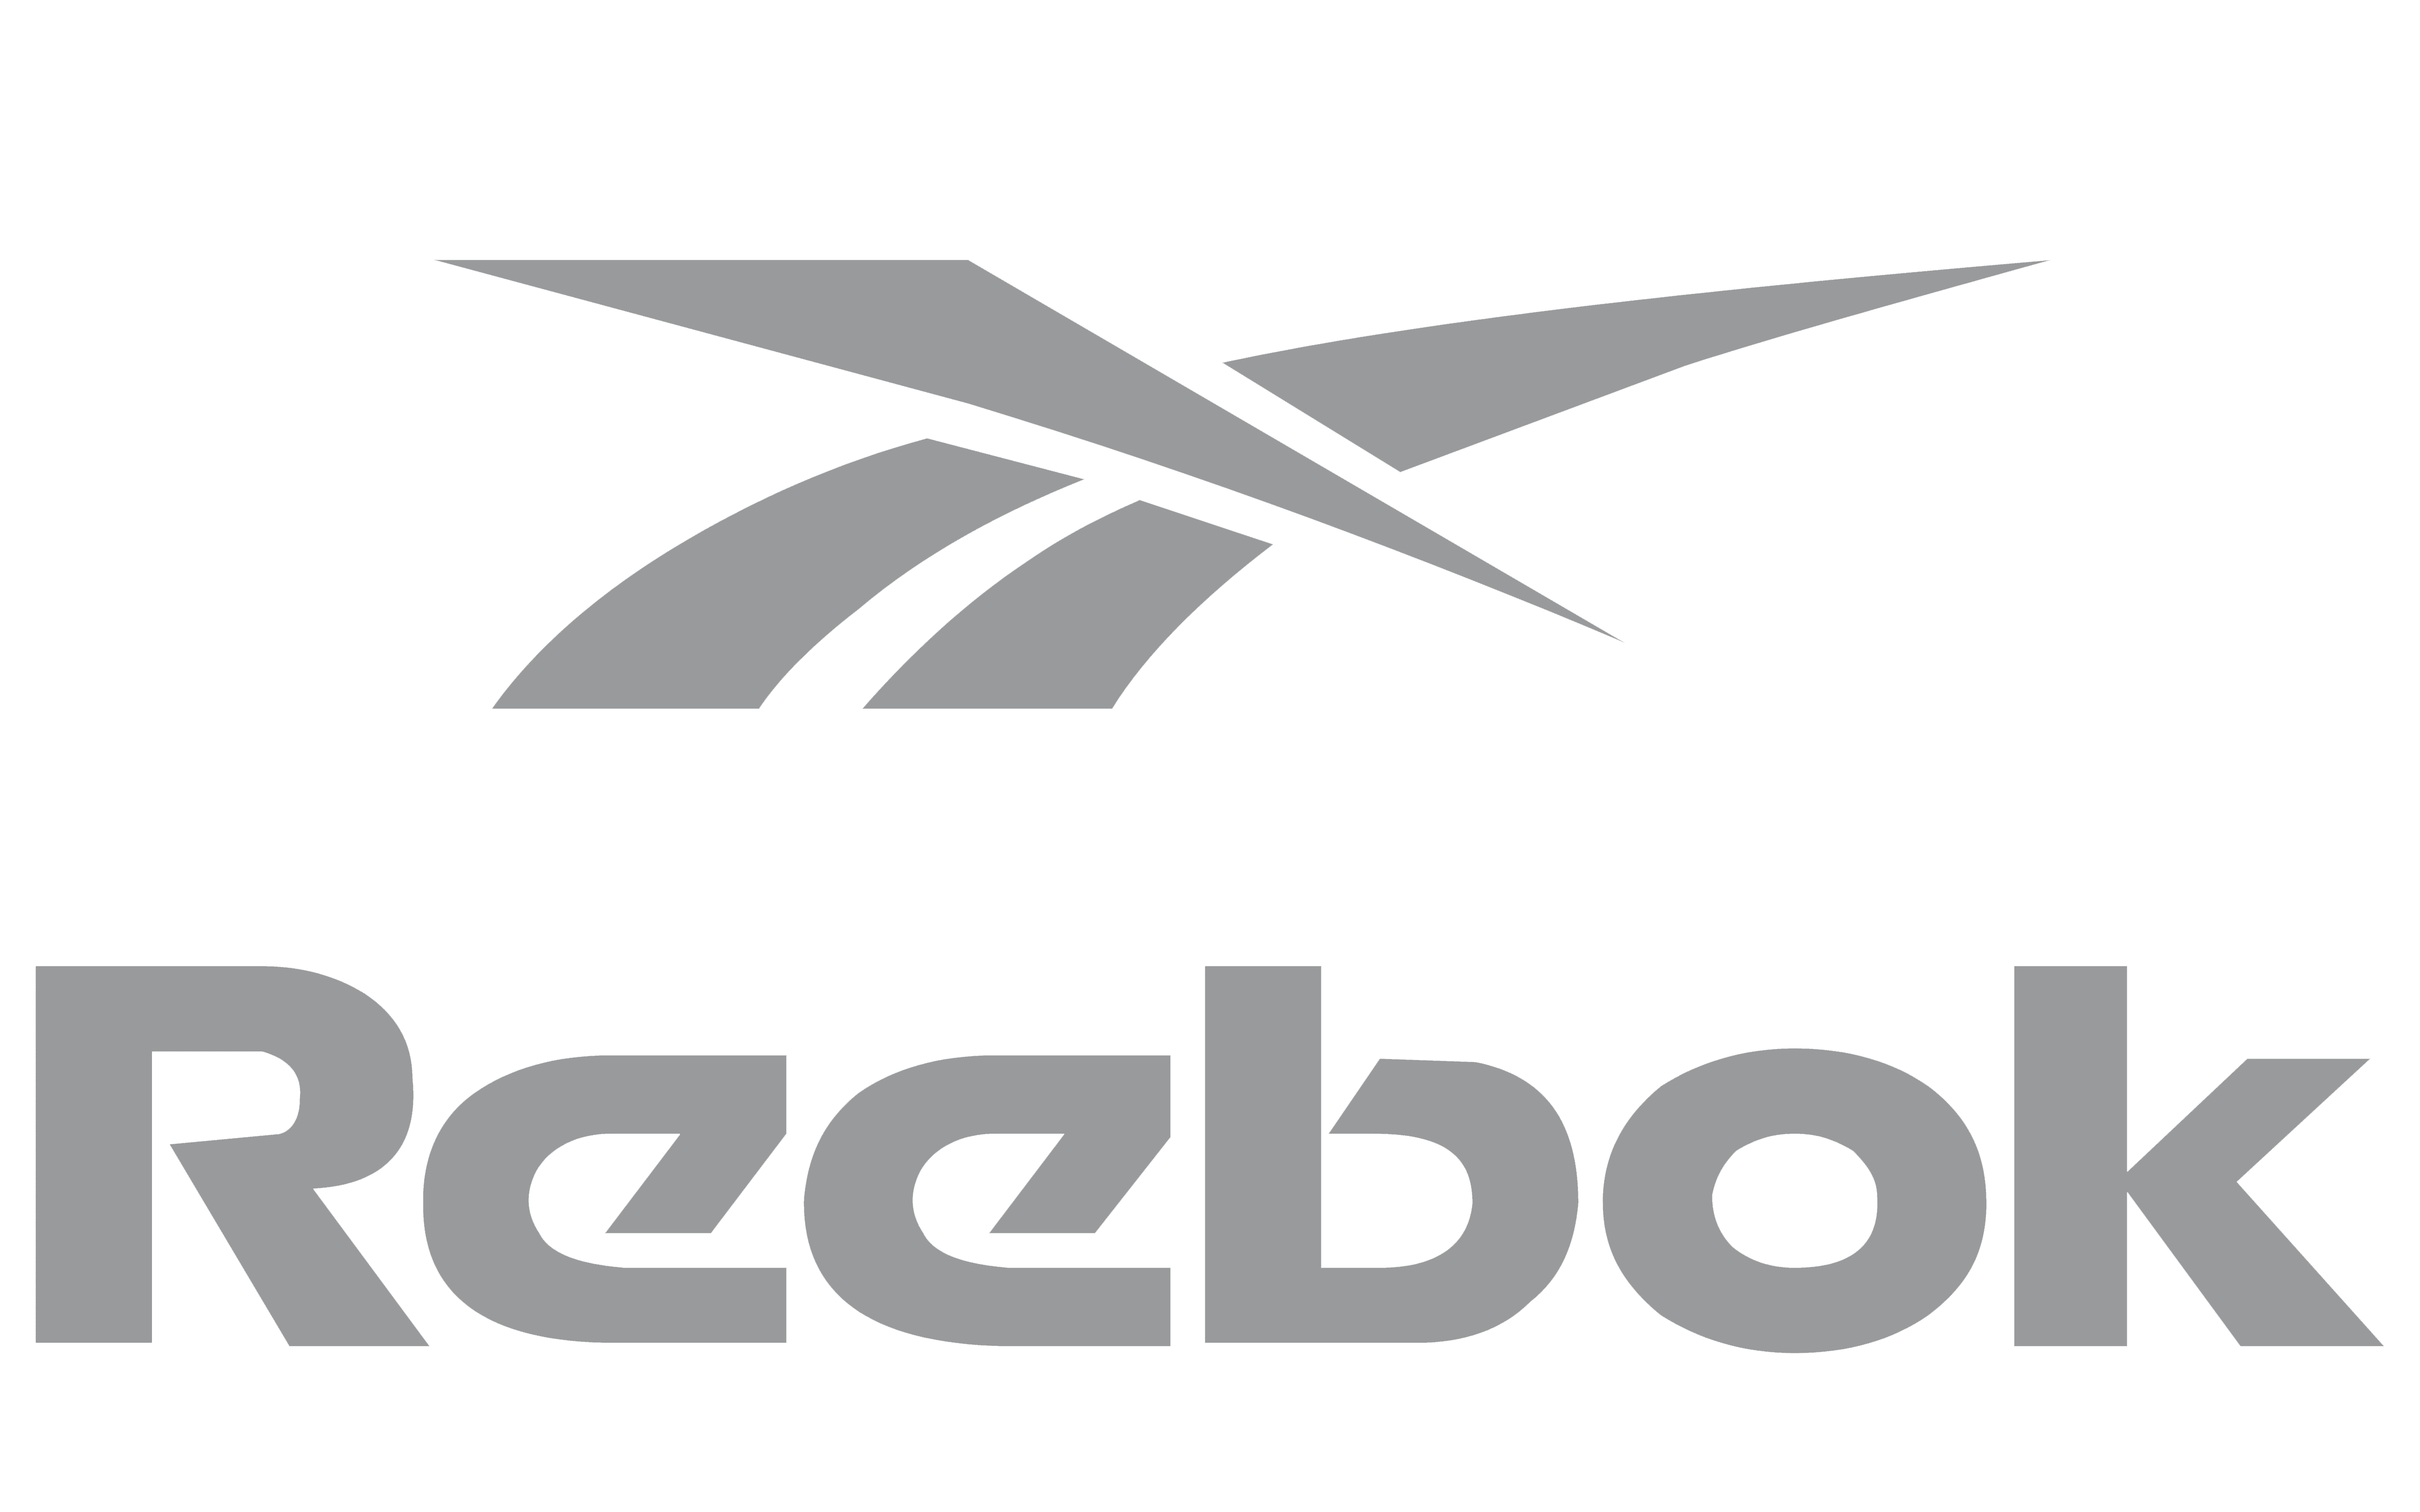 Reebok Logo Old | vlr.eng.br